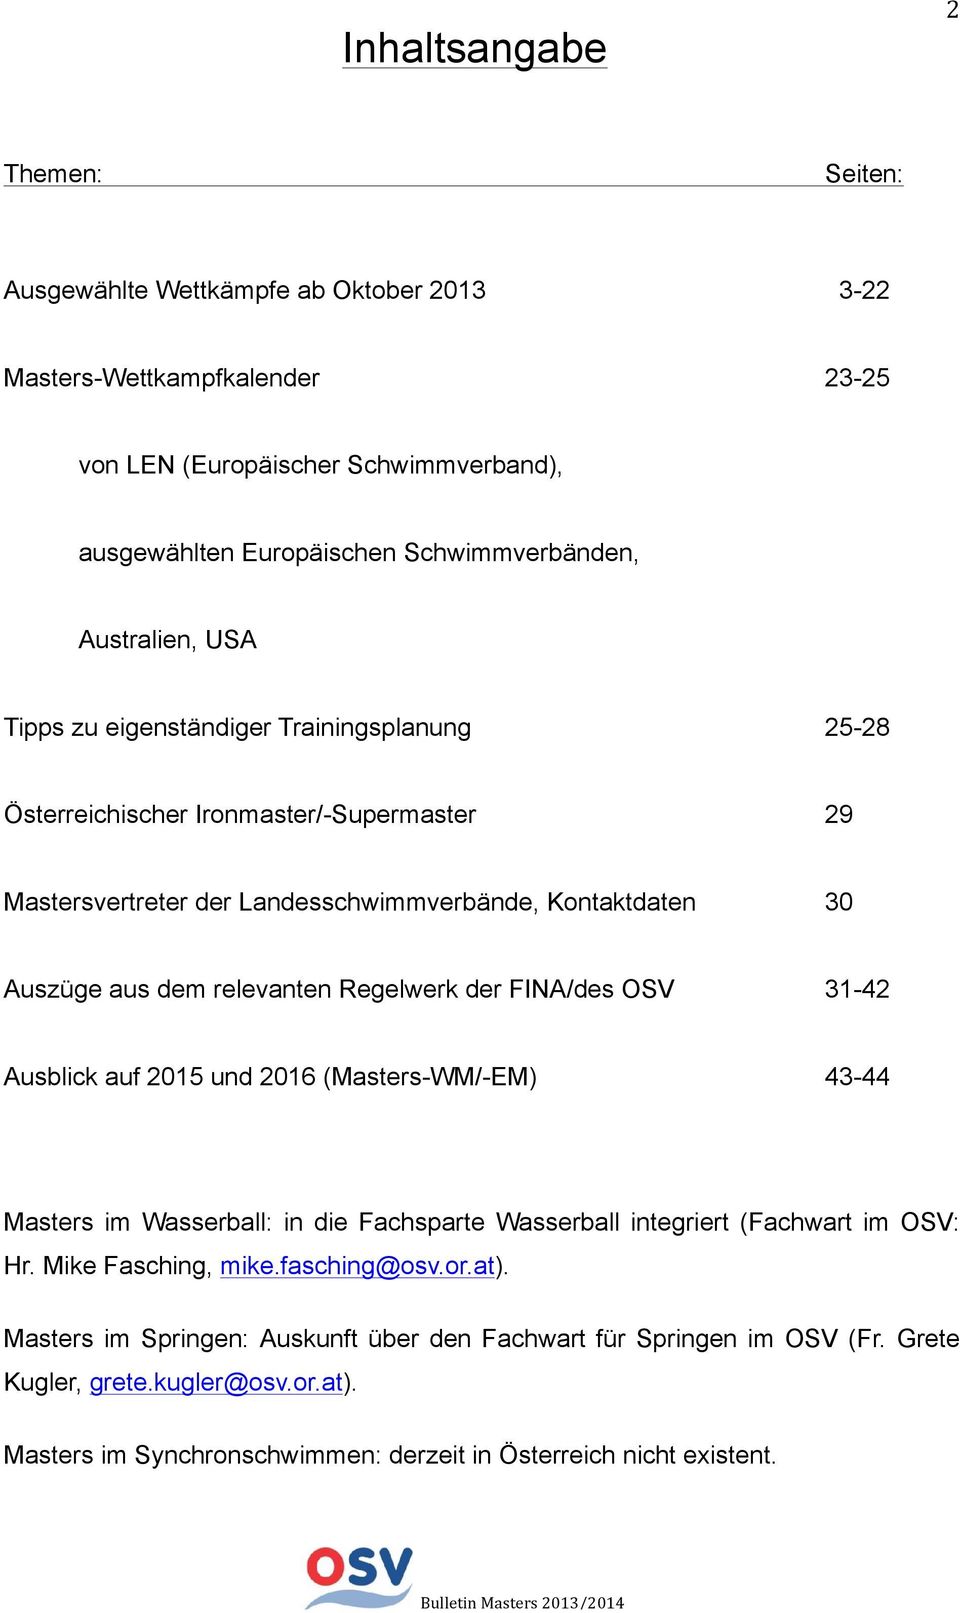 Regelwerk der FINA/des OSV 31-42 Ausblick auf 2015 und 2016 (Masters-WM/-EM) 43-44 Masters im Wasserball: in die Fachsparte Wasserball integriert (Fachwart im OSV: Hr. Mike Fasching, mike.